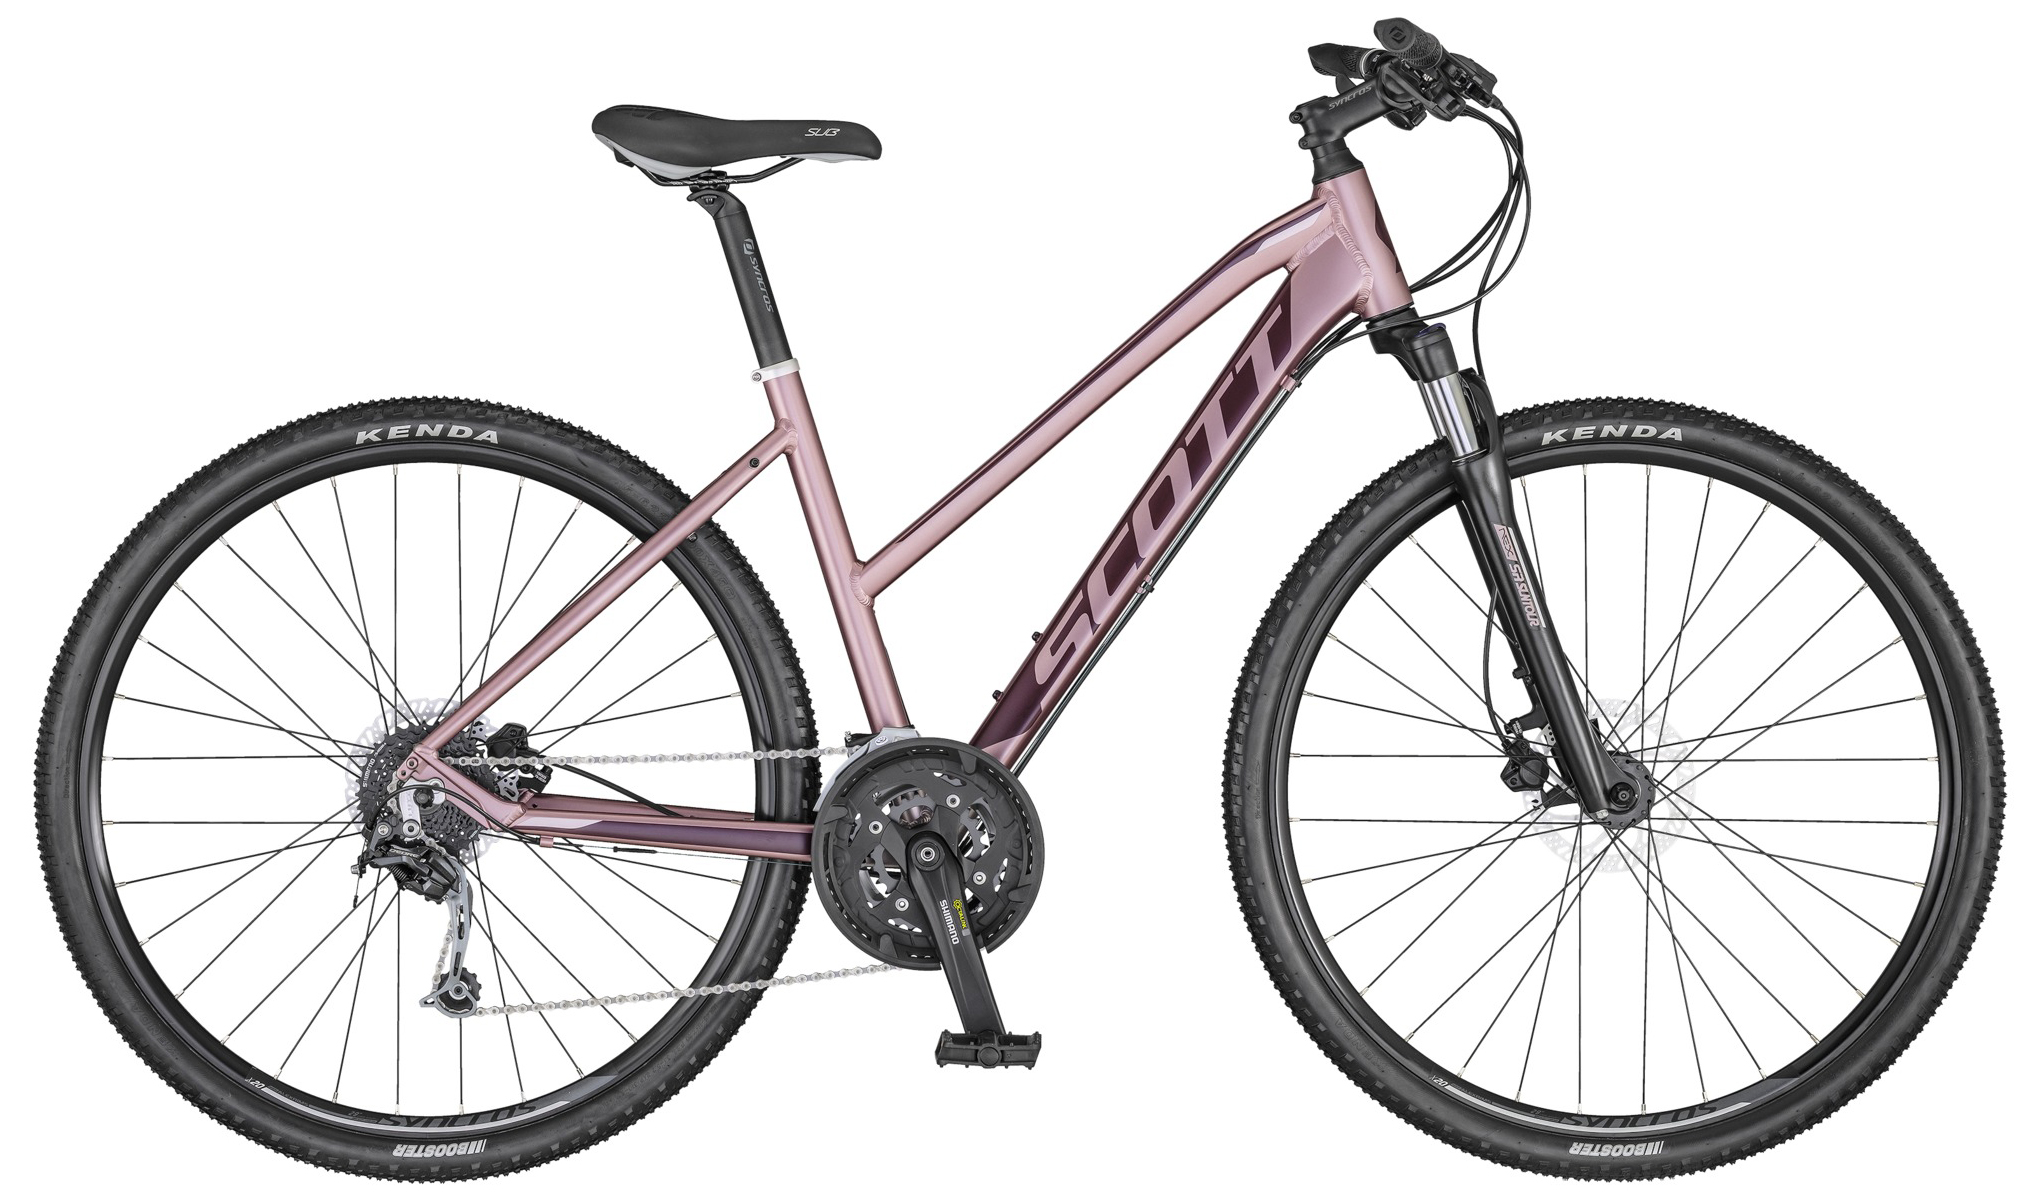  Отзывы о Женском велосипеде Scott Sub Cross 30 Lady 2022